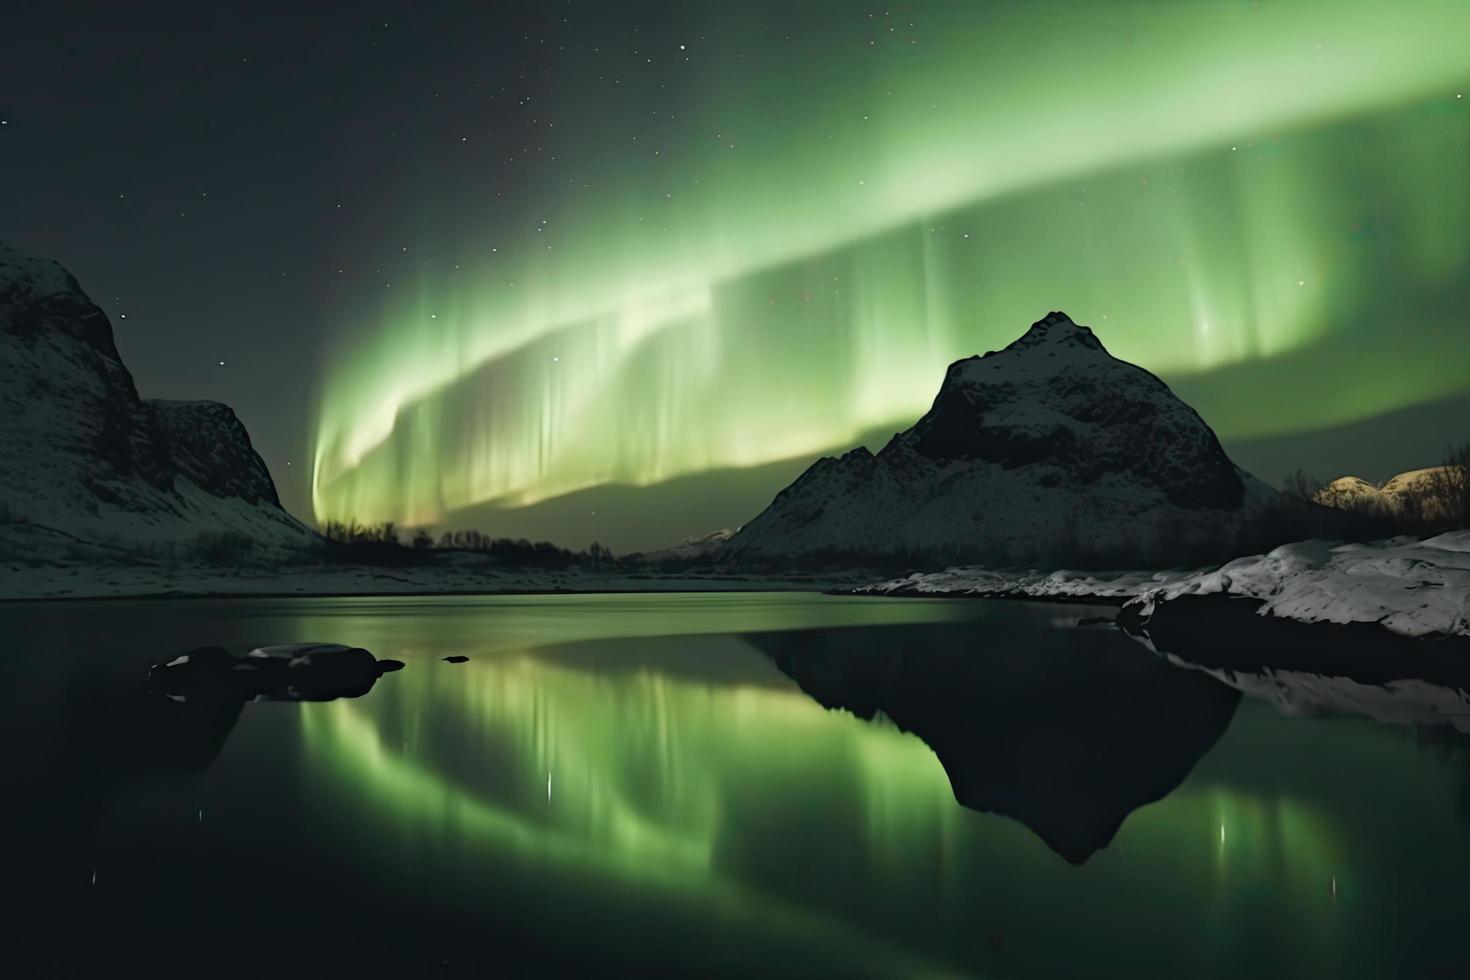 https://static.vecteezy.com/ti/fotos-gratis/p1/22455553-aurora-boreal-em-a-noruega-verde-norte-luzes-acima-montanhas-noite-ceu-com-polar-luzes-noite-inverno-panorama-com-aurora-gratis-foto.jpg